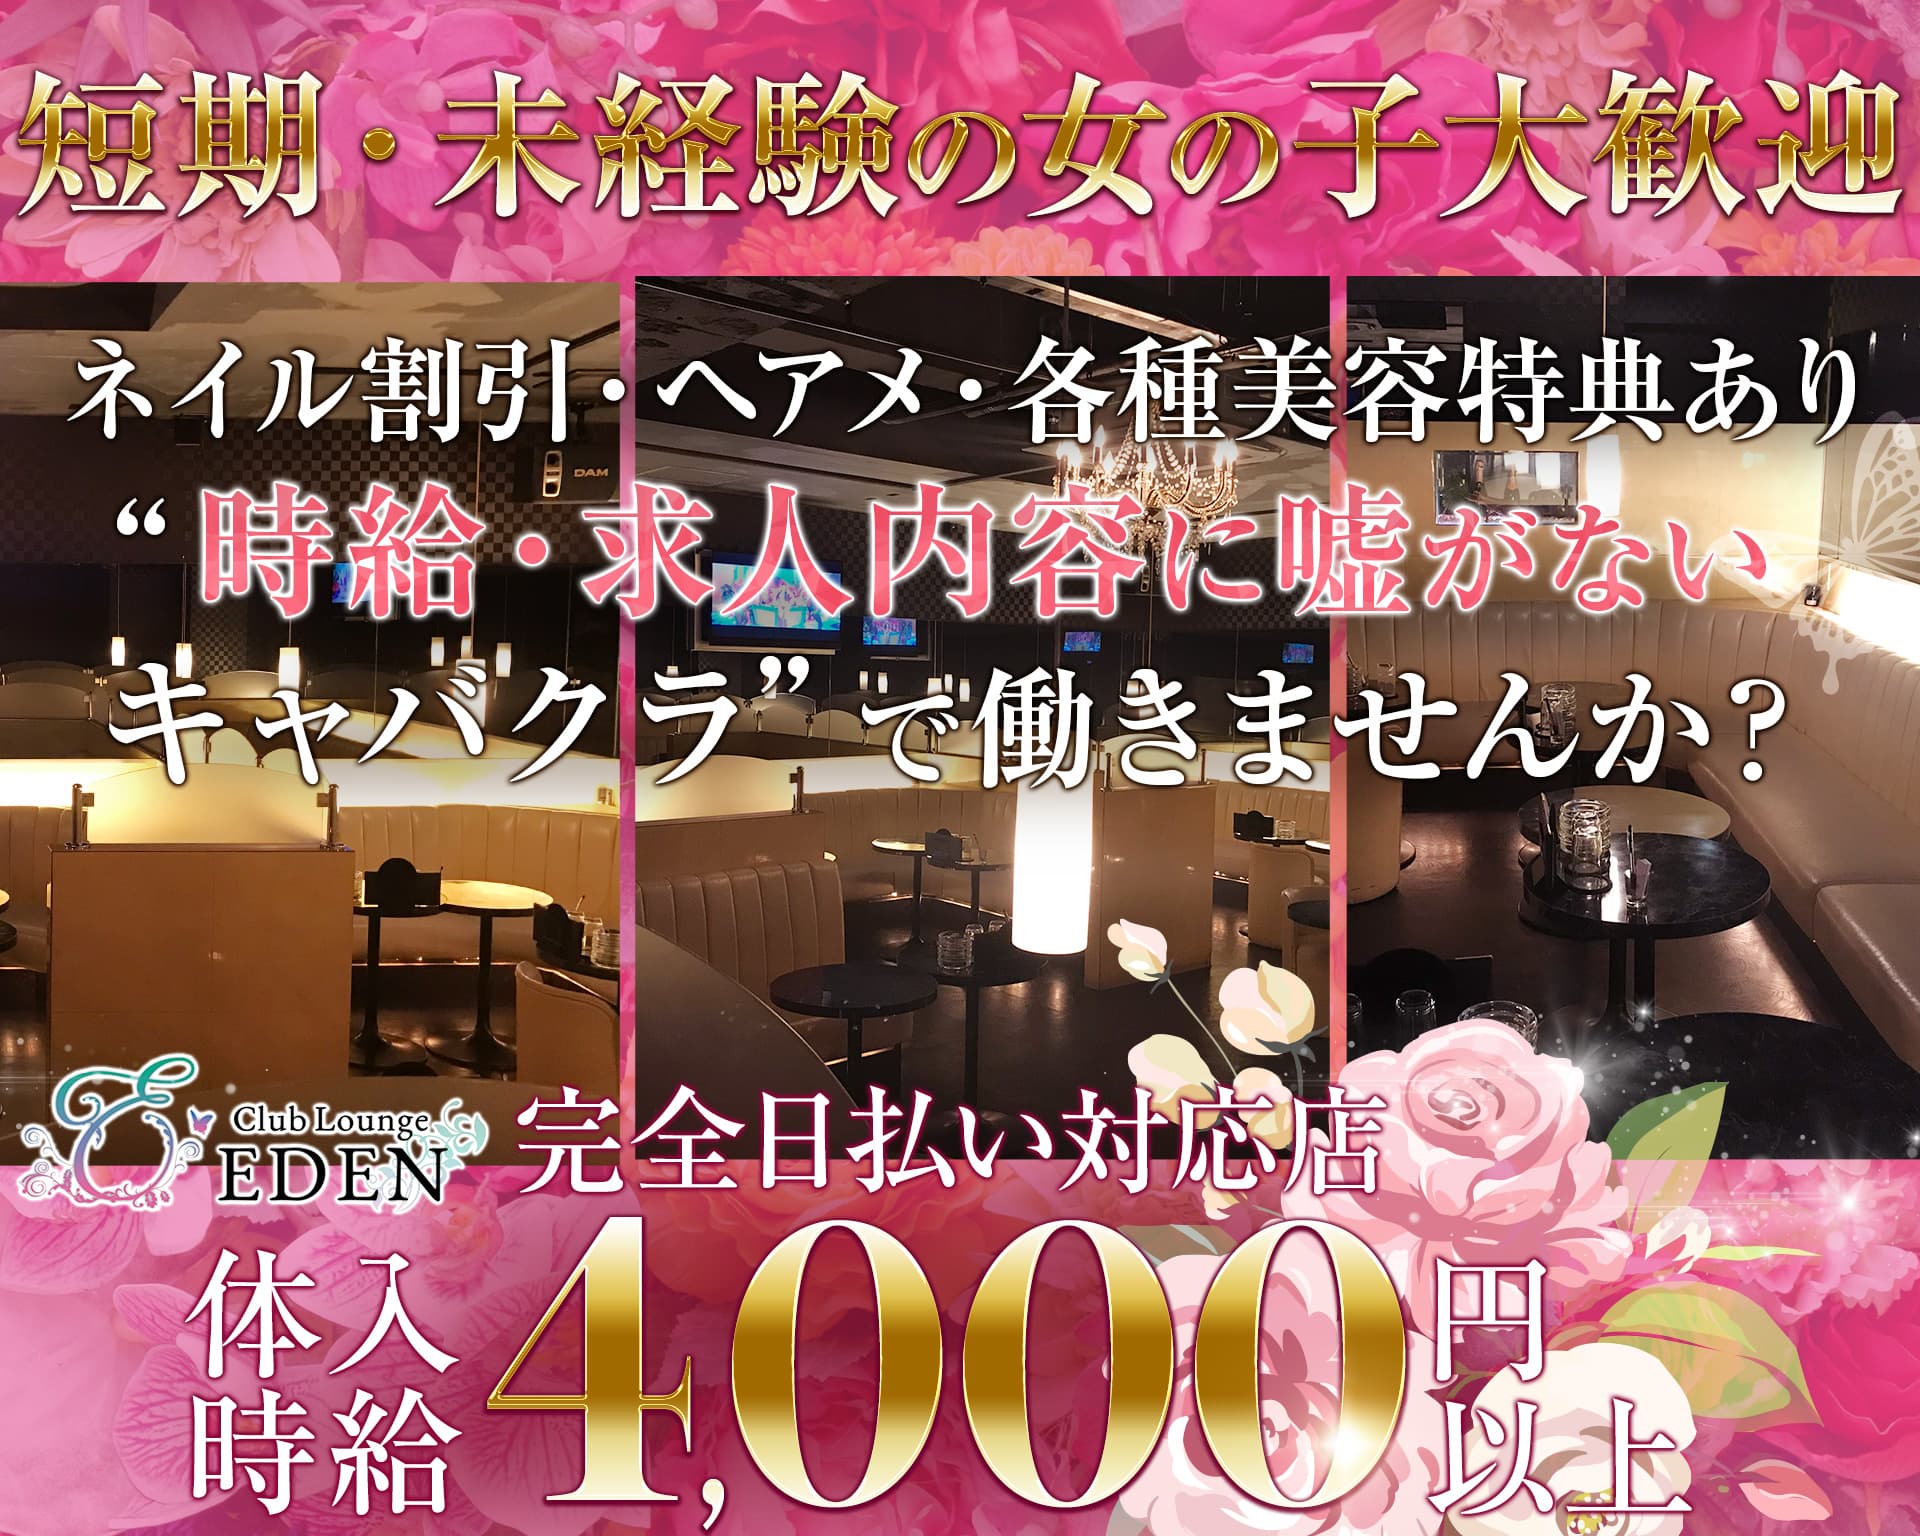 【笹塚・幡ヶ谷】Club Lounge EDEN (エデン)【公式体入・求人情報】 歌舞伎町キャバクラ TOP画像